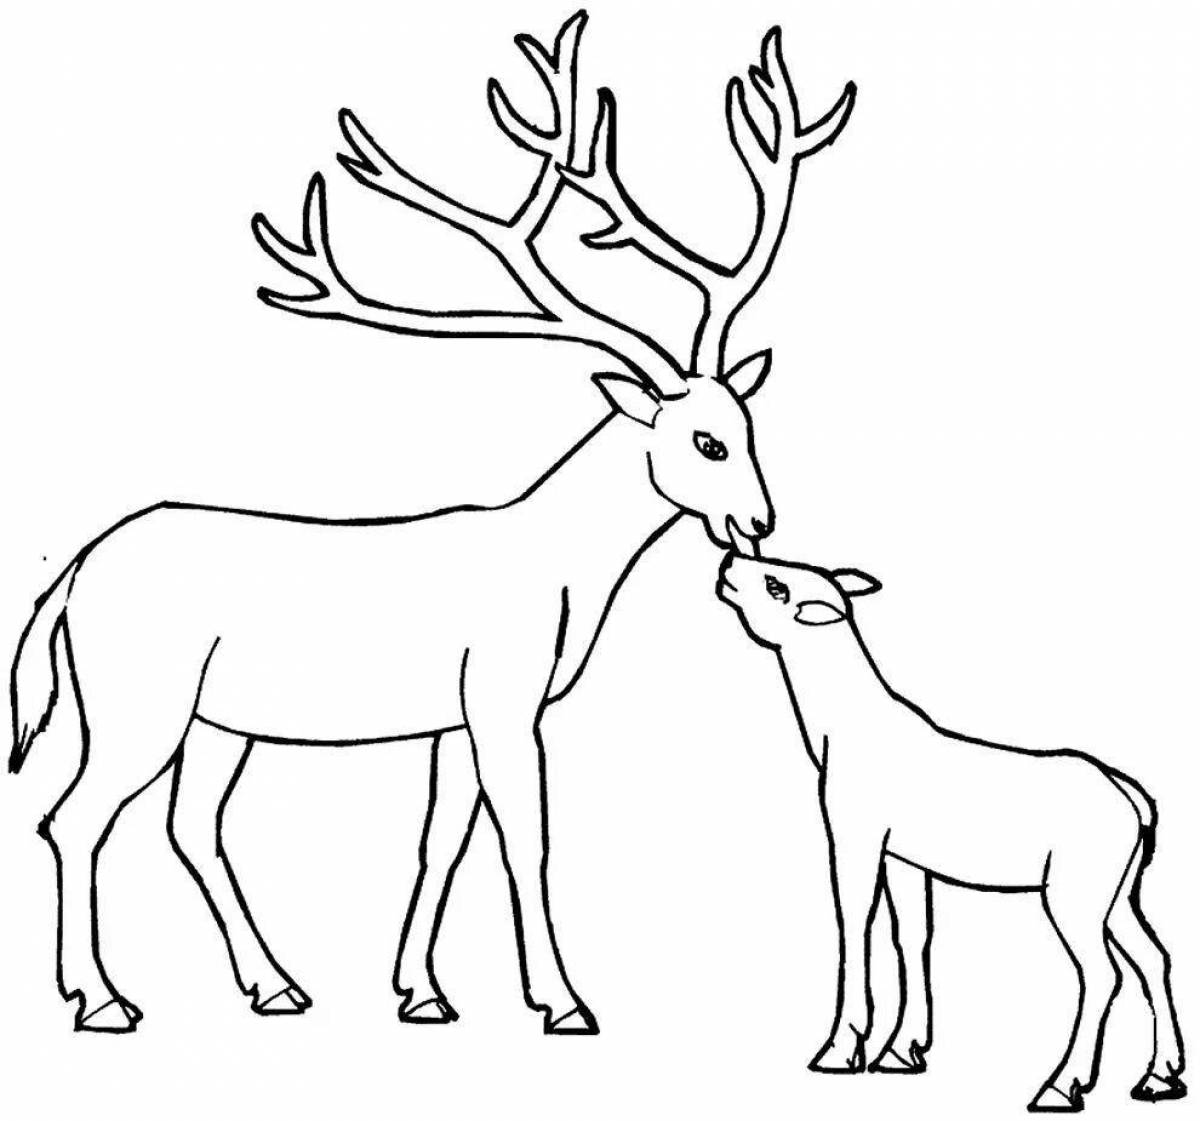 Fun coloring deer